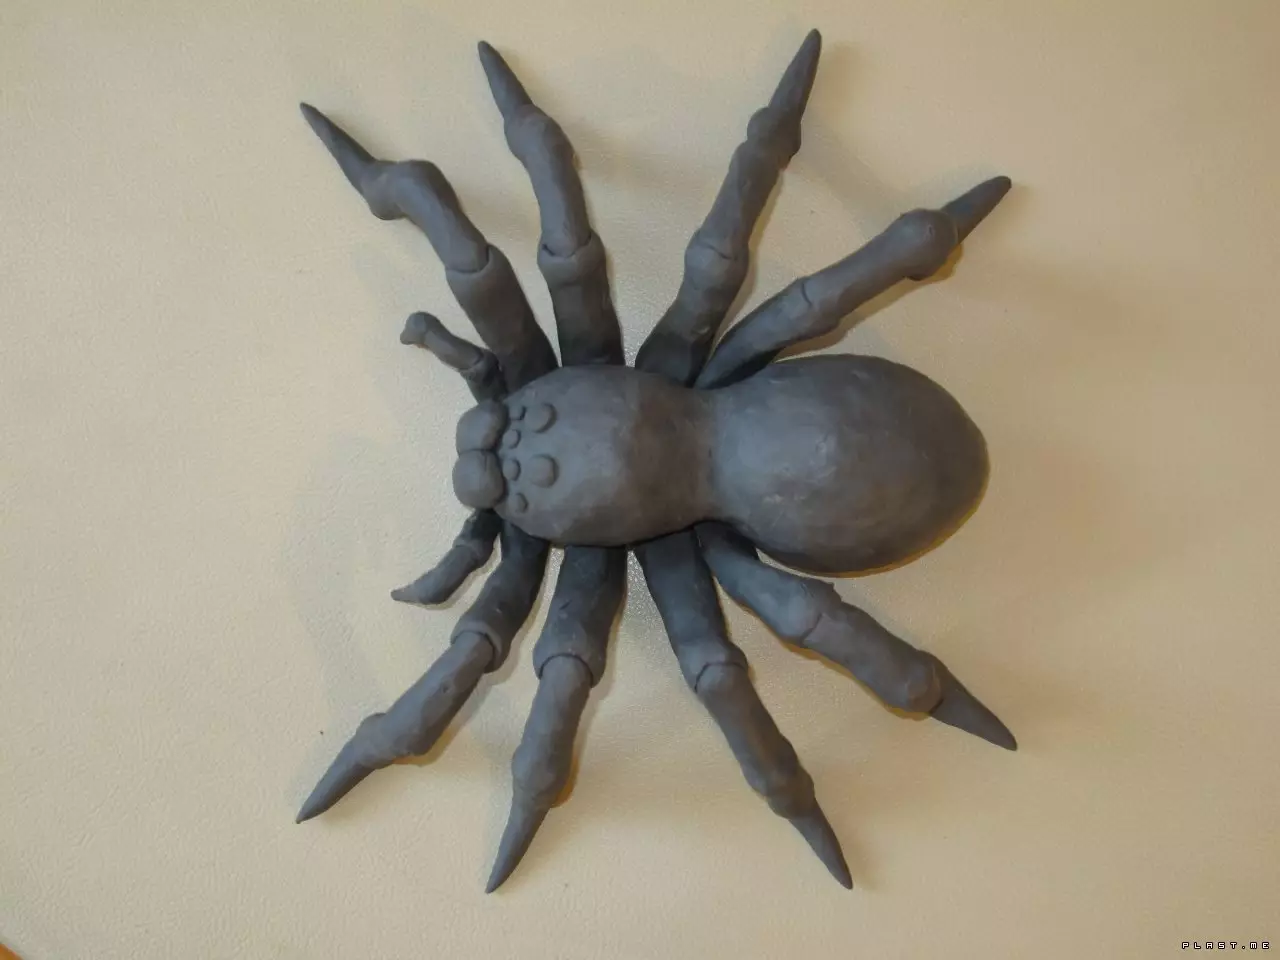 Pająk i sieć na Halloween: Jak zrobić pająk z własnymi rękami? Opcje strony internetowej z gazy i wątków, inne pomysły 26744_4